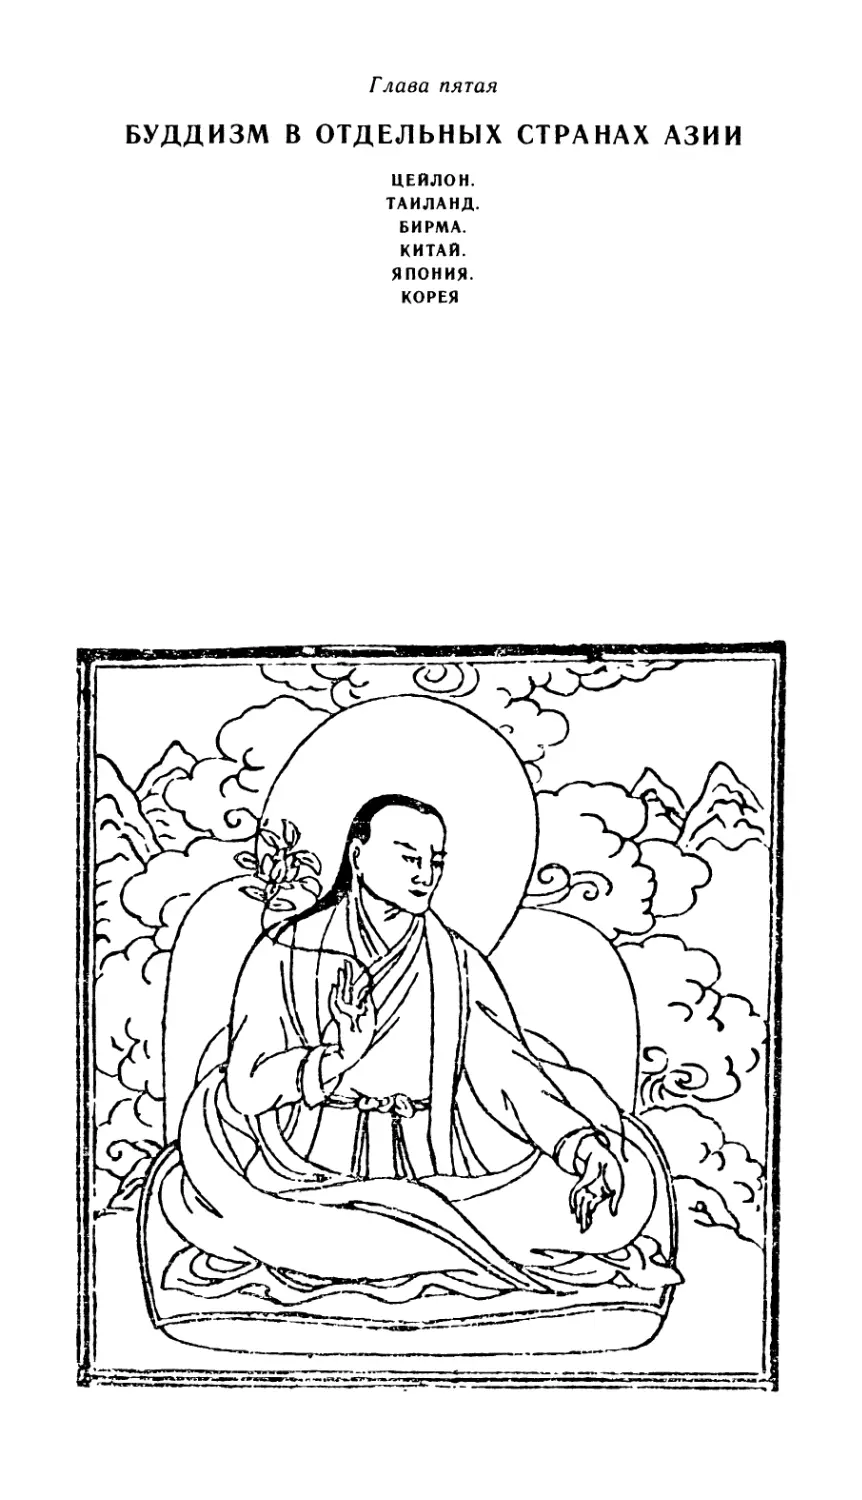 Глава пятая. Буддизм в отдельных странах Азии